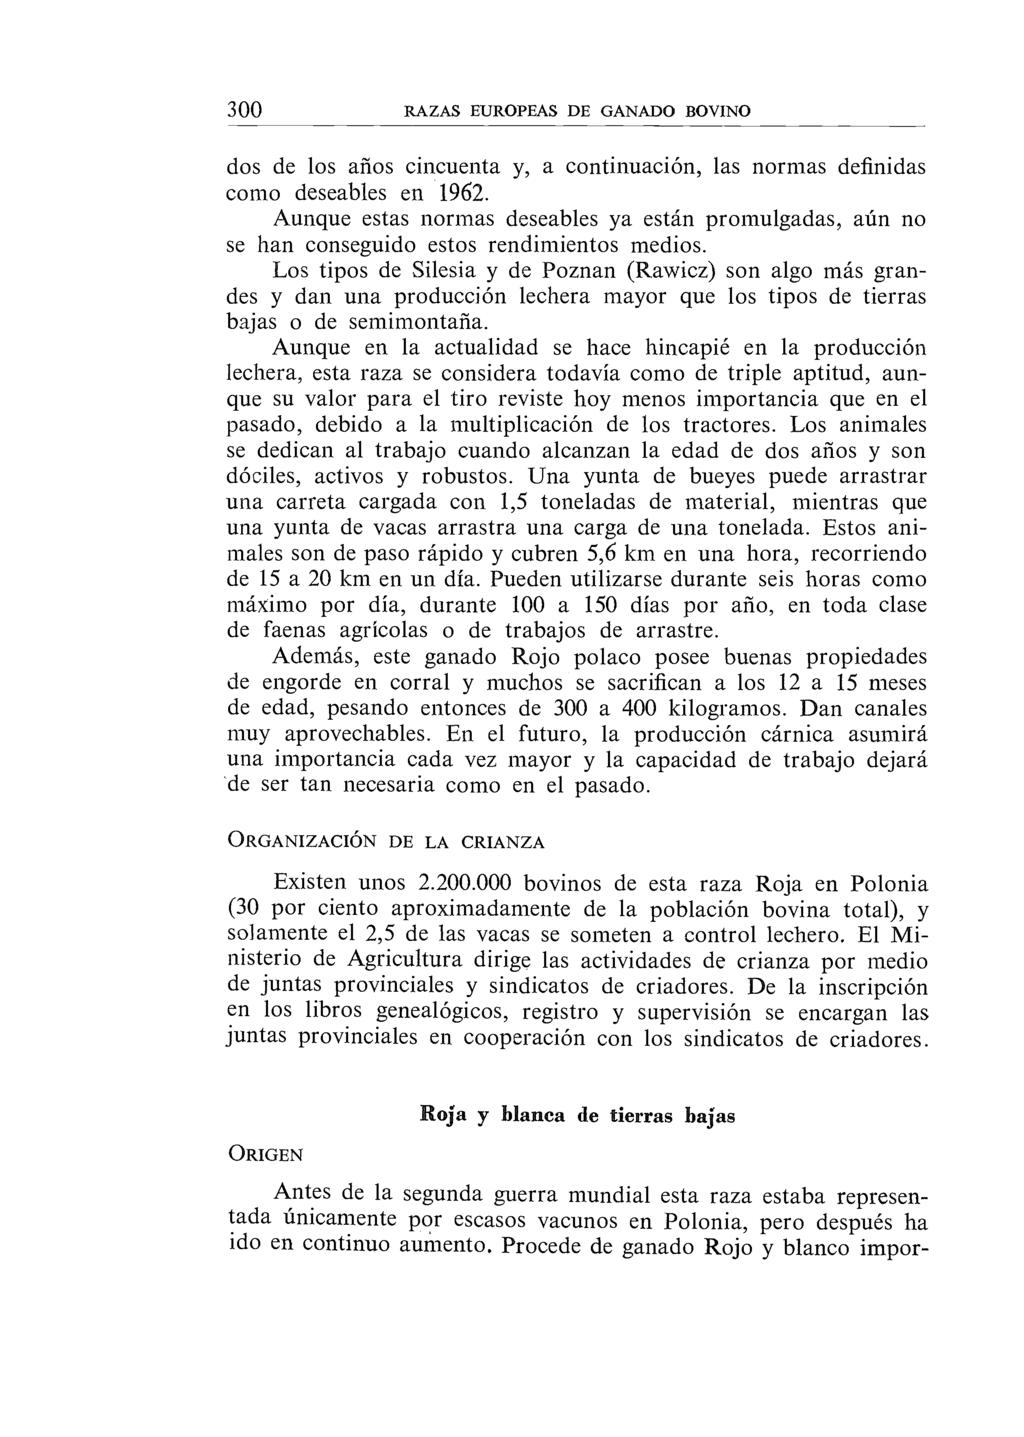 300 RAZAS EUROPEAS DE GANADO BOVINO dos de los arios cincuenta y, a continuación, las normas definidas corno deseables en 1962.